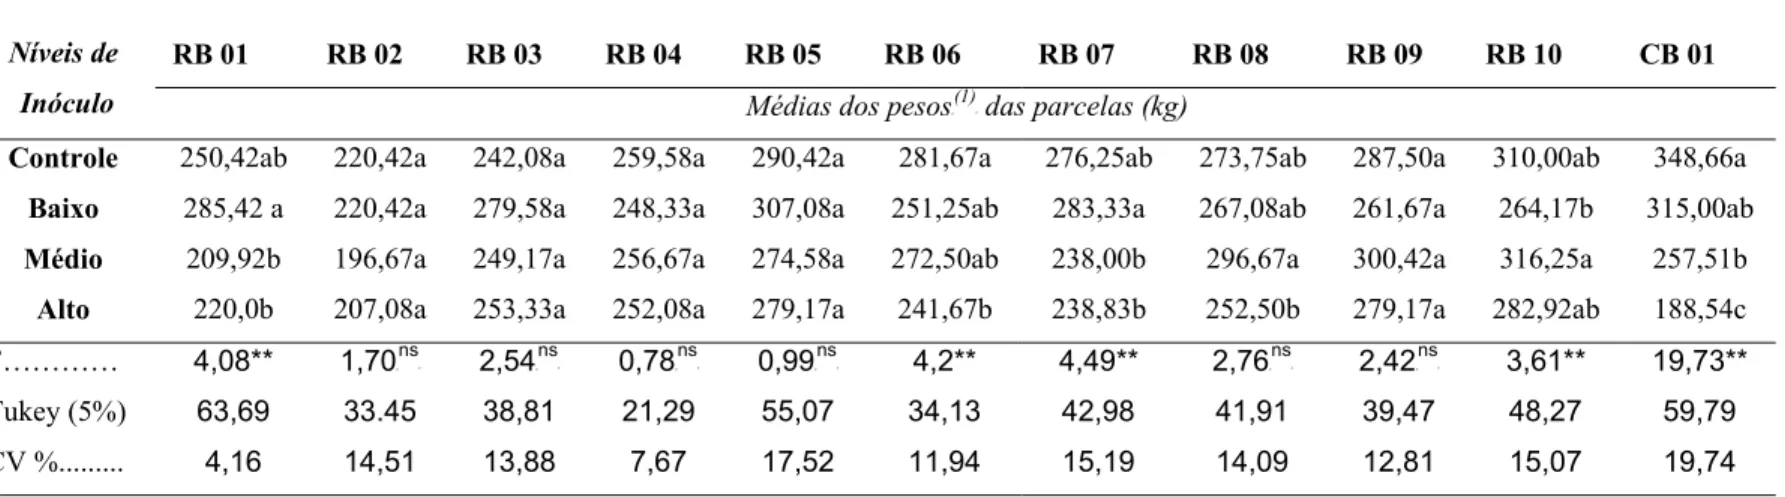 Tabela 2 – Médias dos pesos das parcelas (kg) de três anos das 11 variedades estudadas 